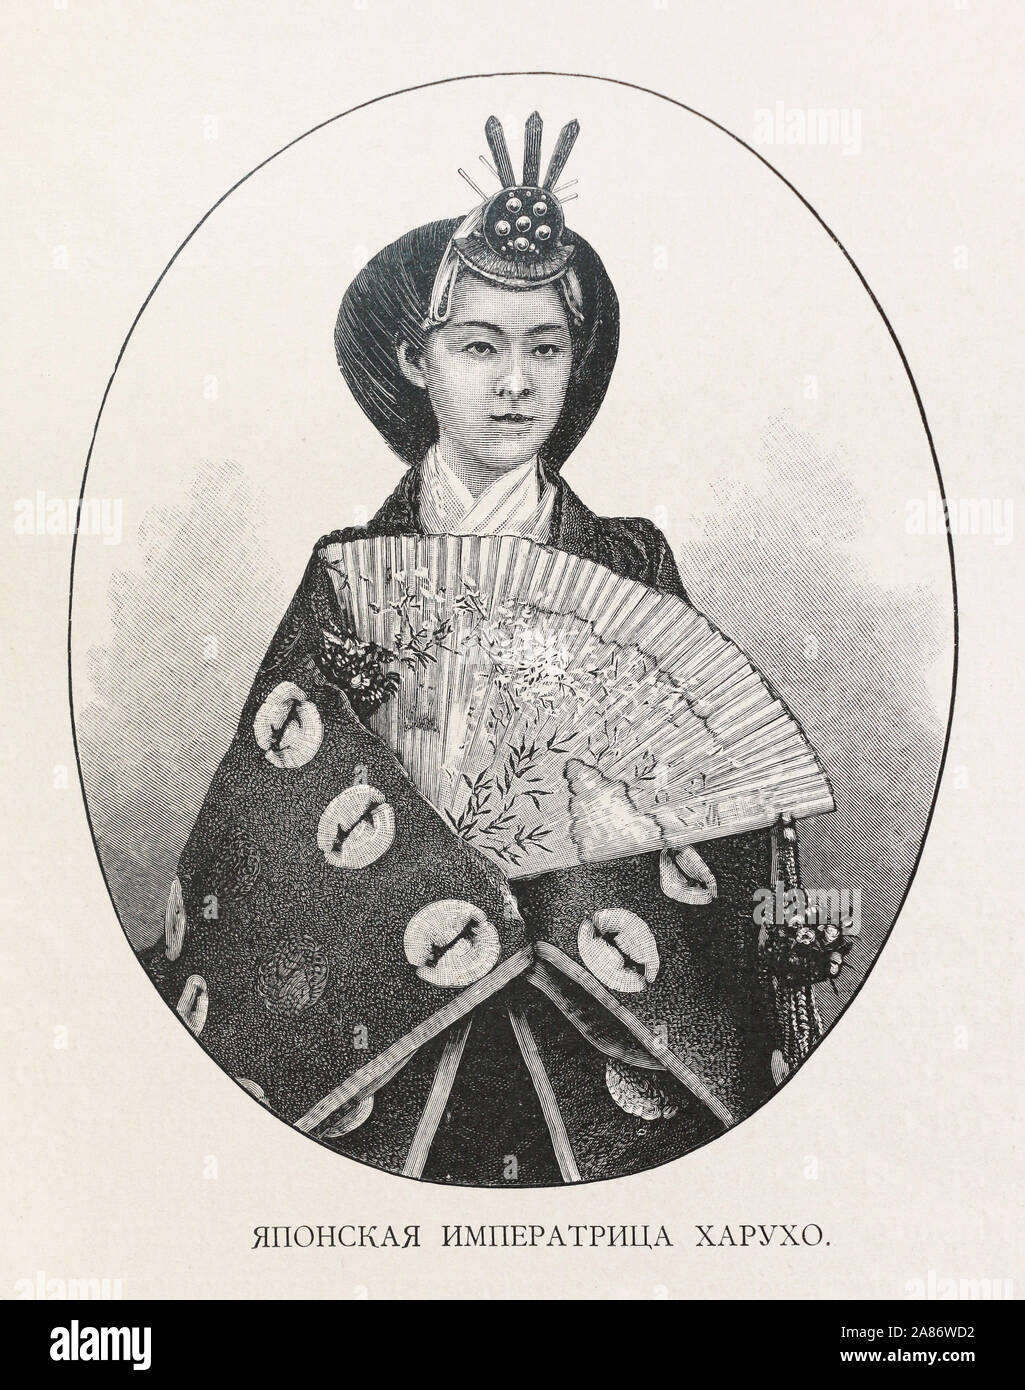 Haruho, Imperatrice del Giappone, moglie dell'Imperatore Meiji. Incisione del XIX secolo. Foto Stock